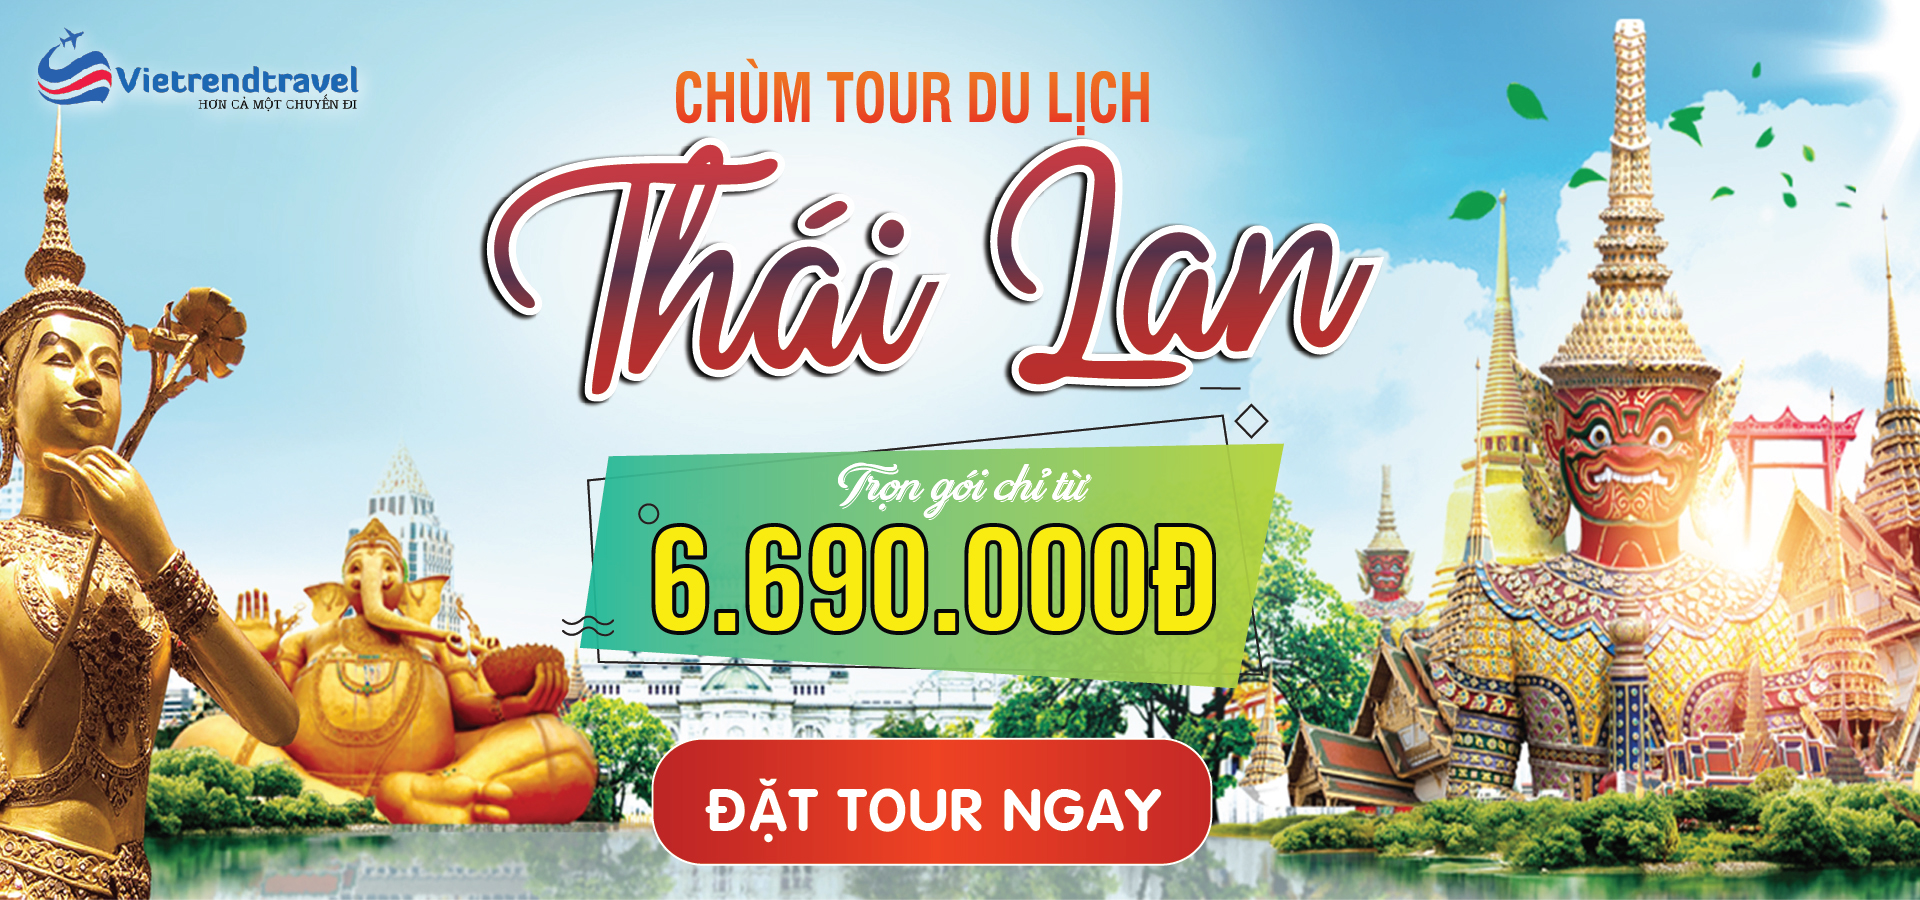 banner thai lan